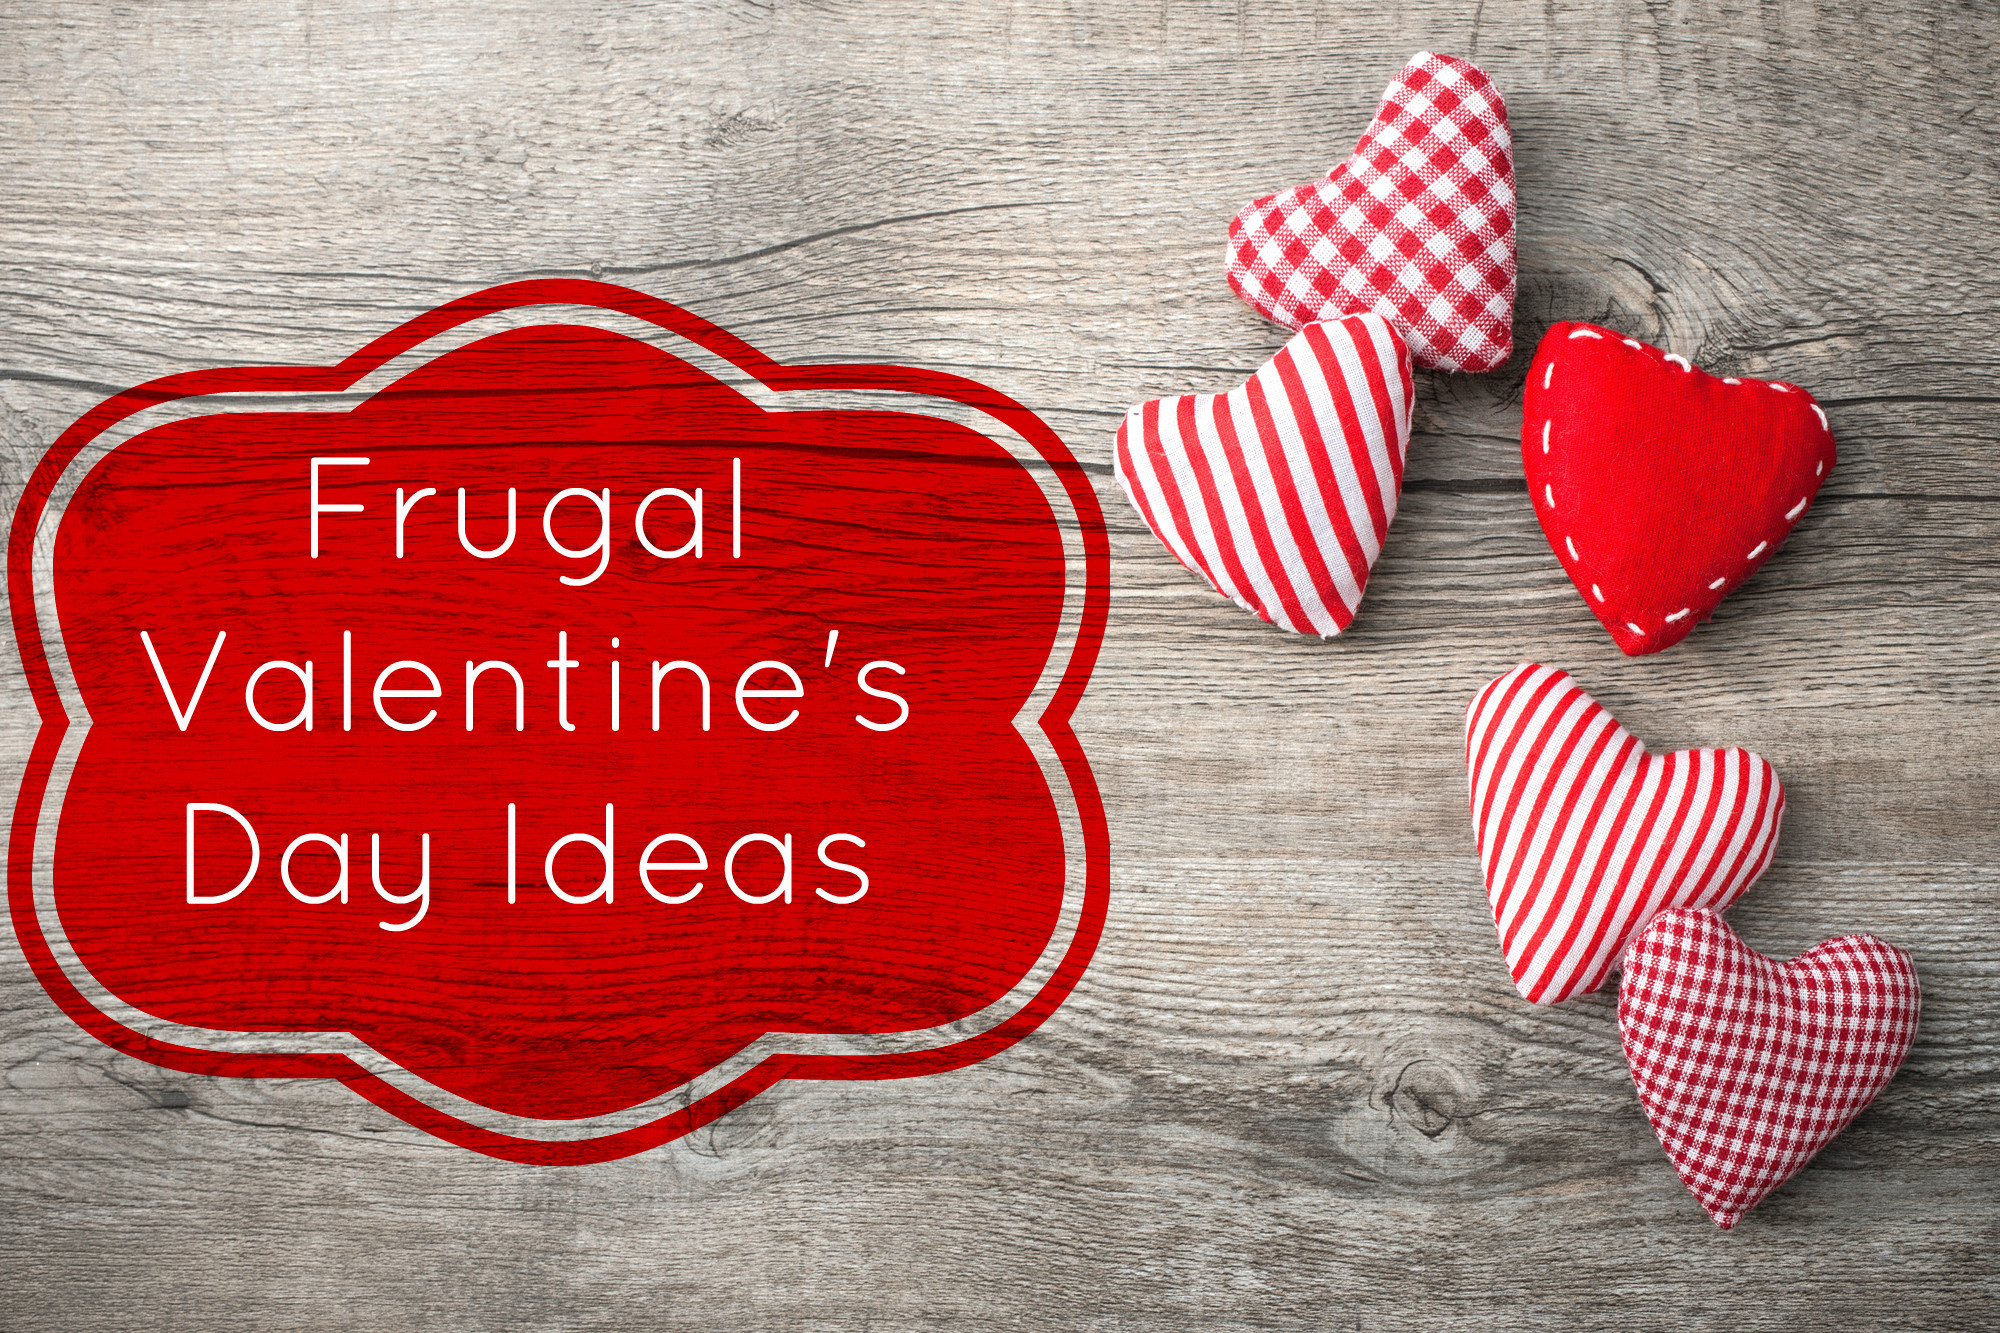 Work Valentines Day Ideas
 Frugal Valentine s Day Ideas 11 Original Ways to Show Love